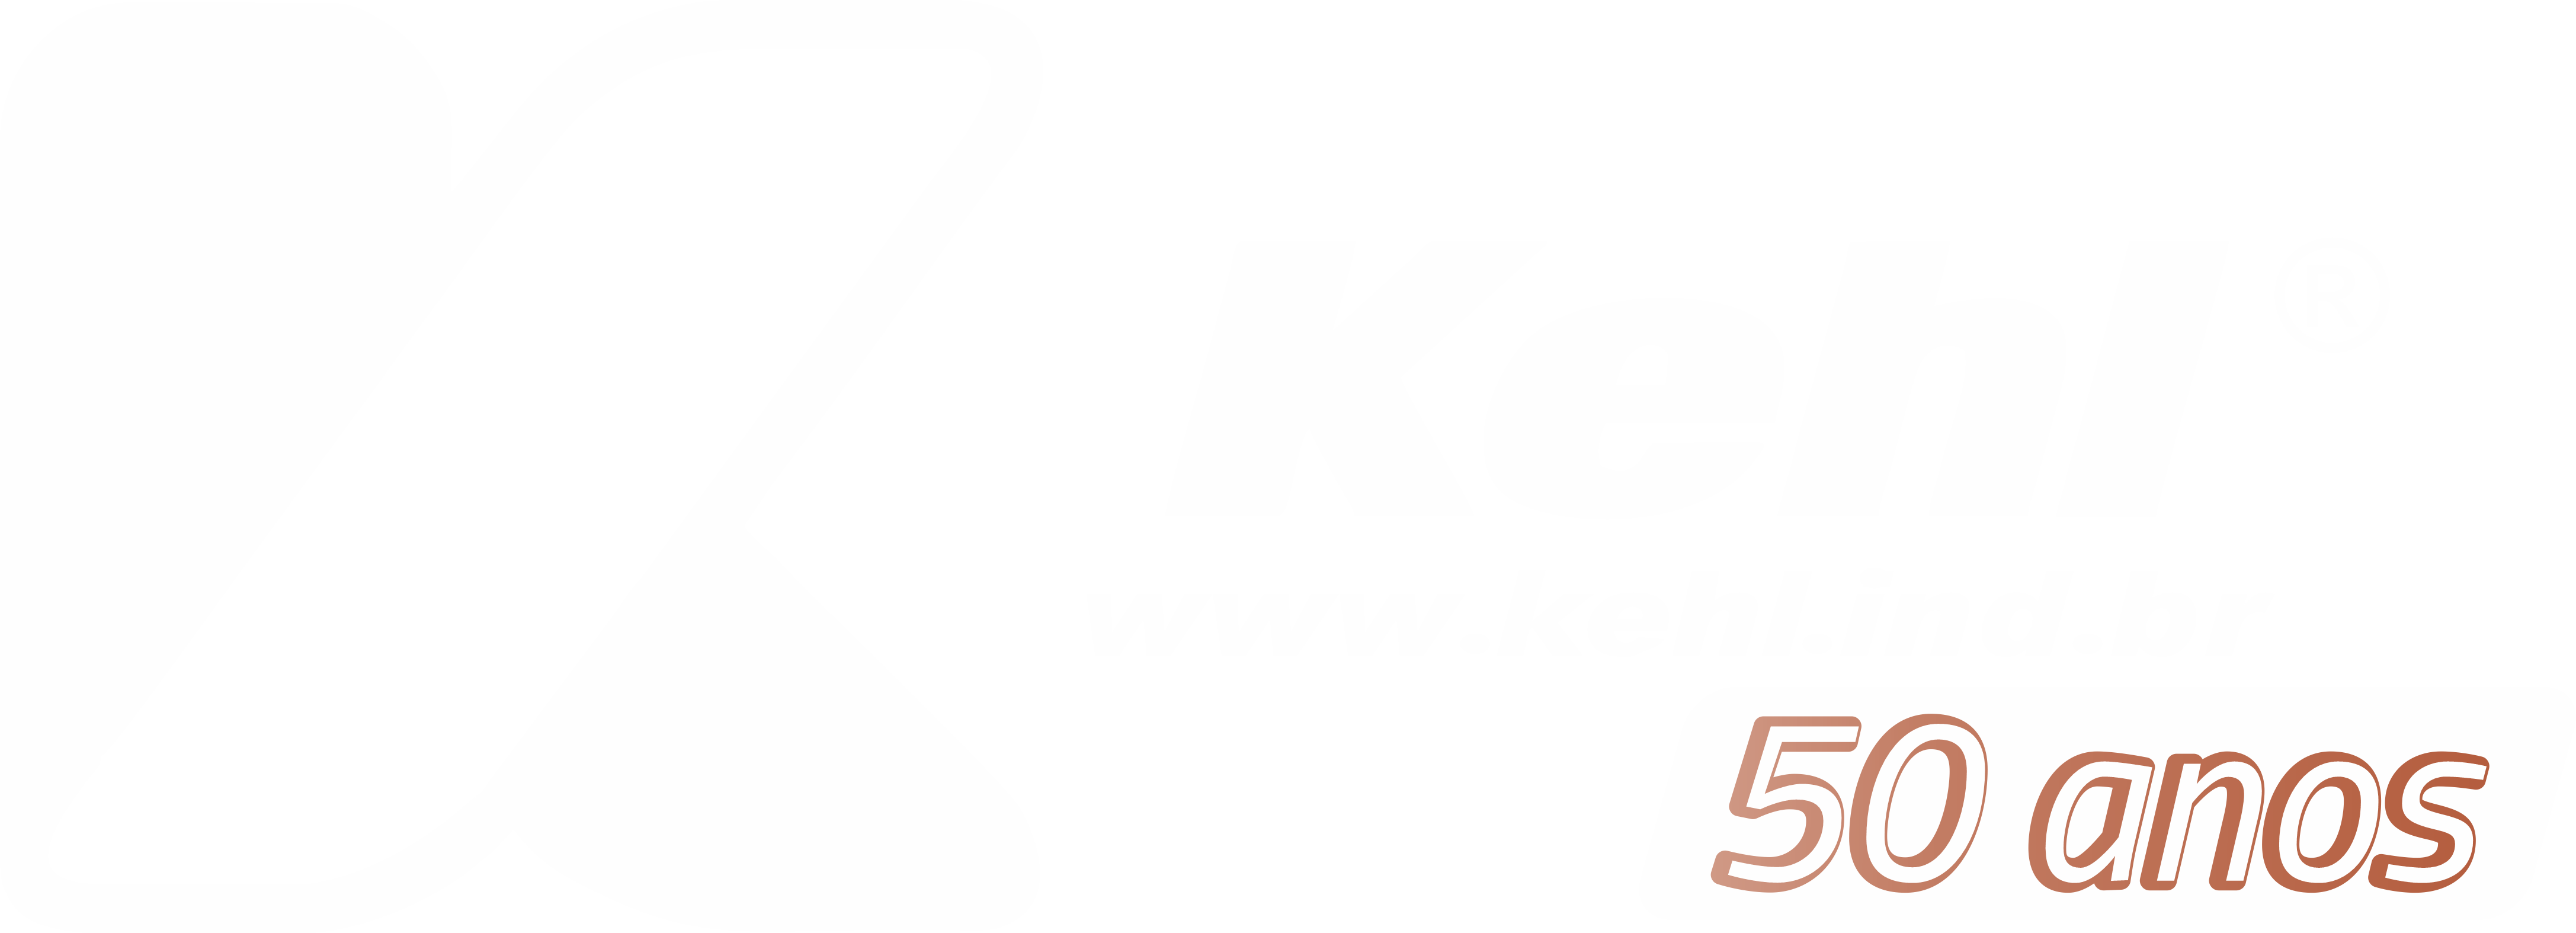 kehl1